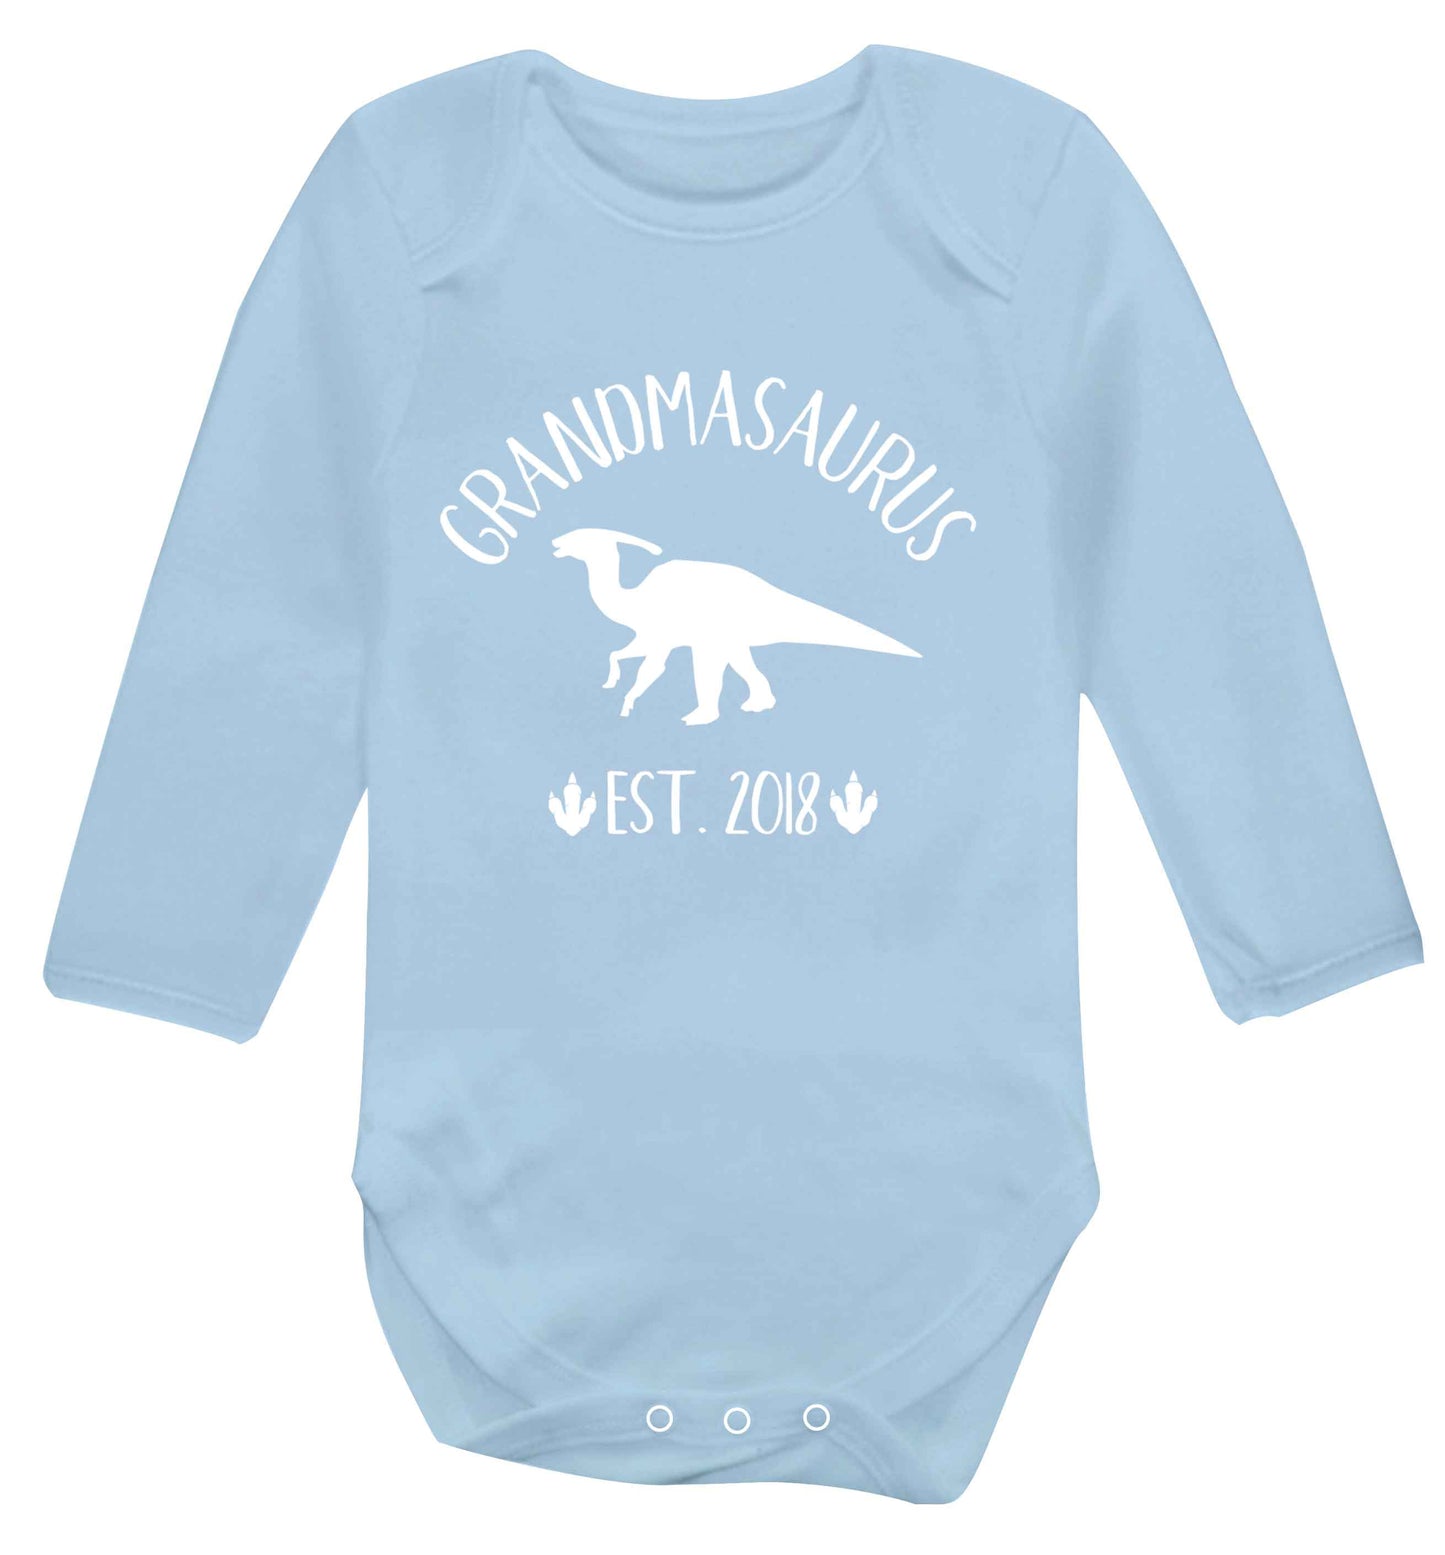 Personalised grandmasaurus since (custom date) Baby Vest long sleeved pale blue 6-12 months